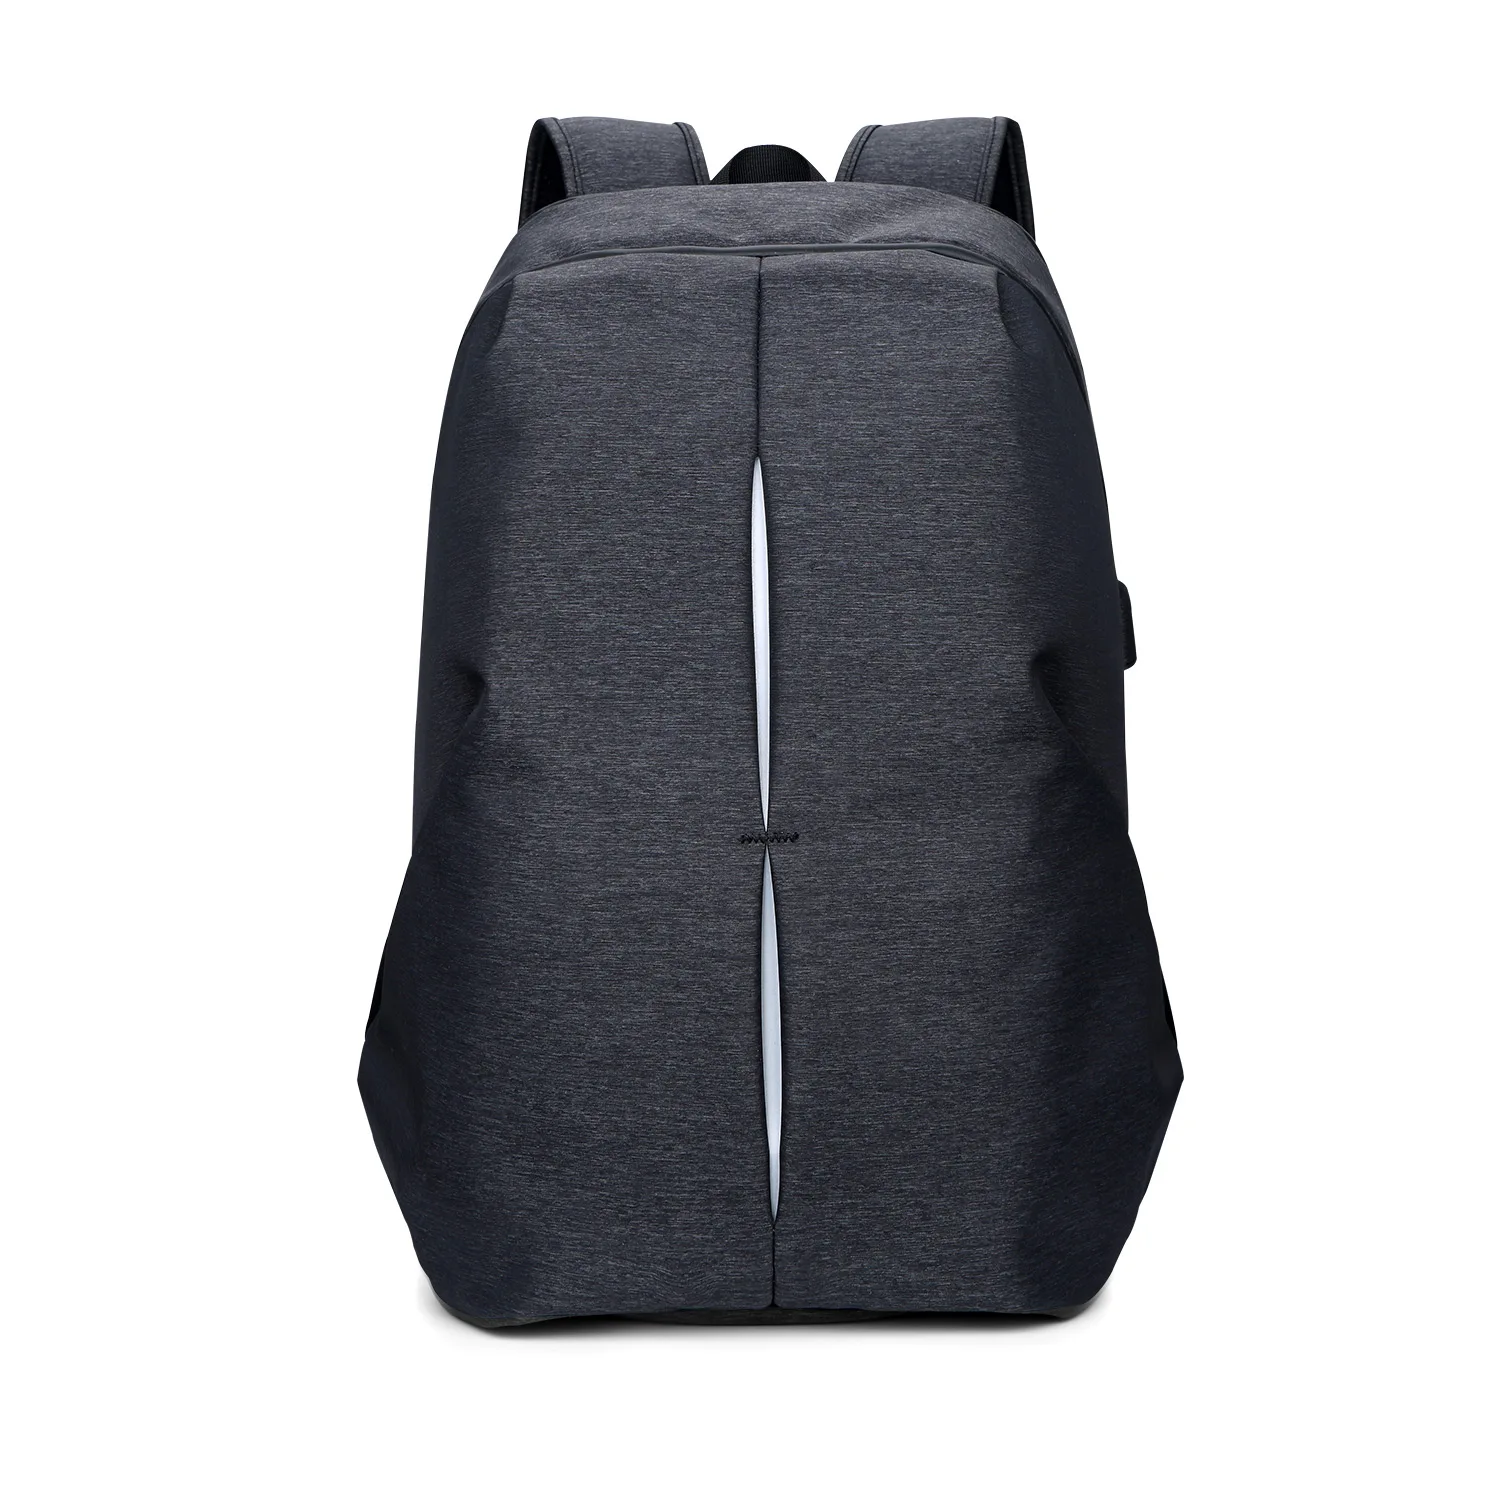 17 дюймов рюкзак для ноутбука рюкзаки водонепроницаемый ранец противоугонное плечо компьютер большой емкости рюкзак мужской студенческий серый